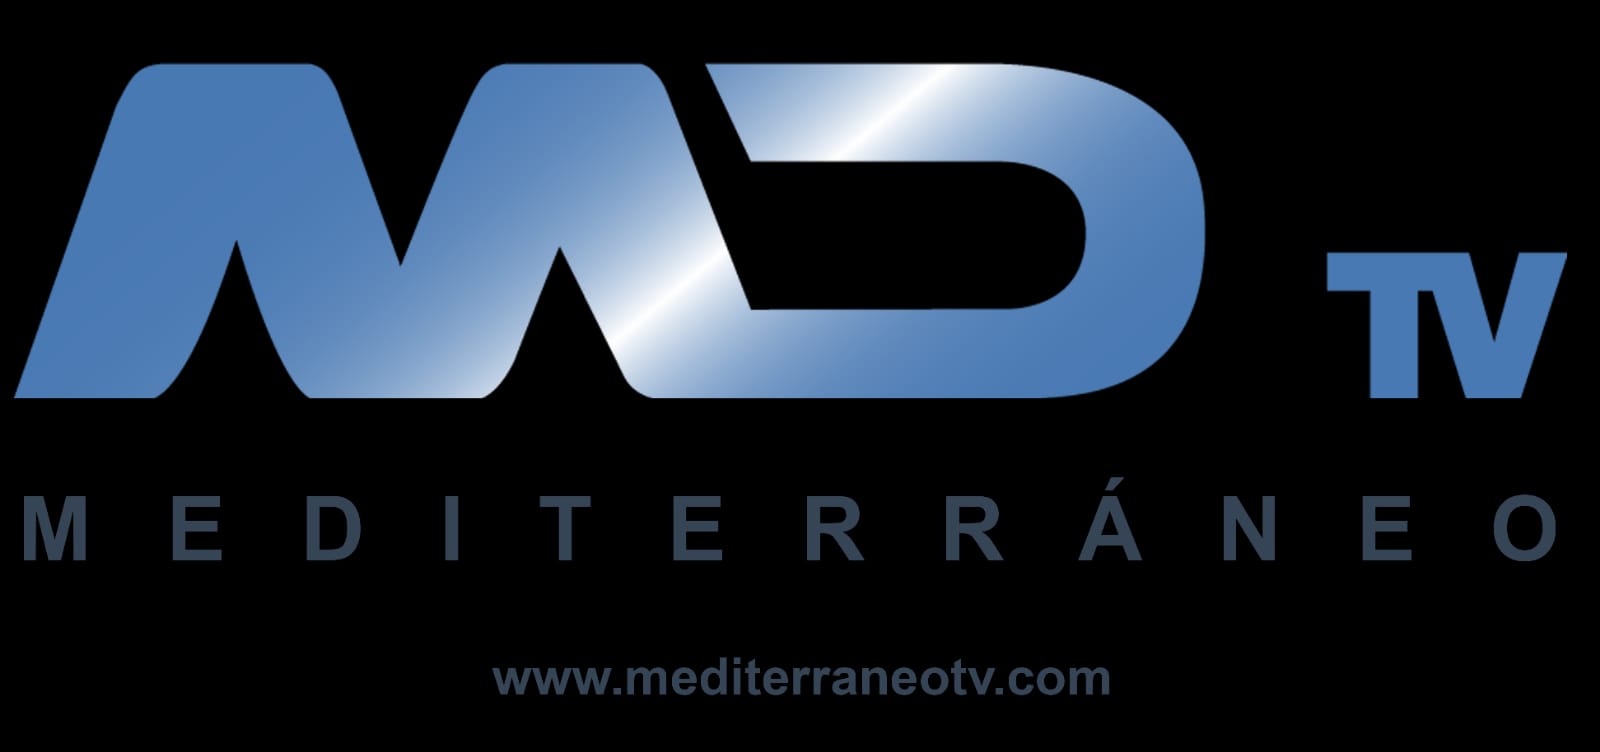 Mediterraneo TV